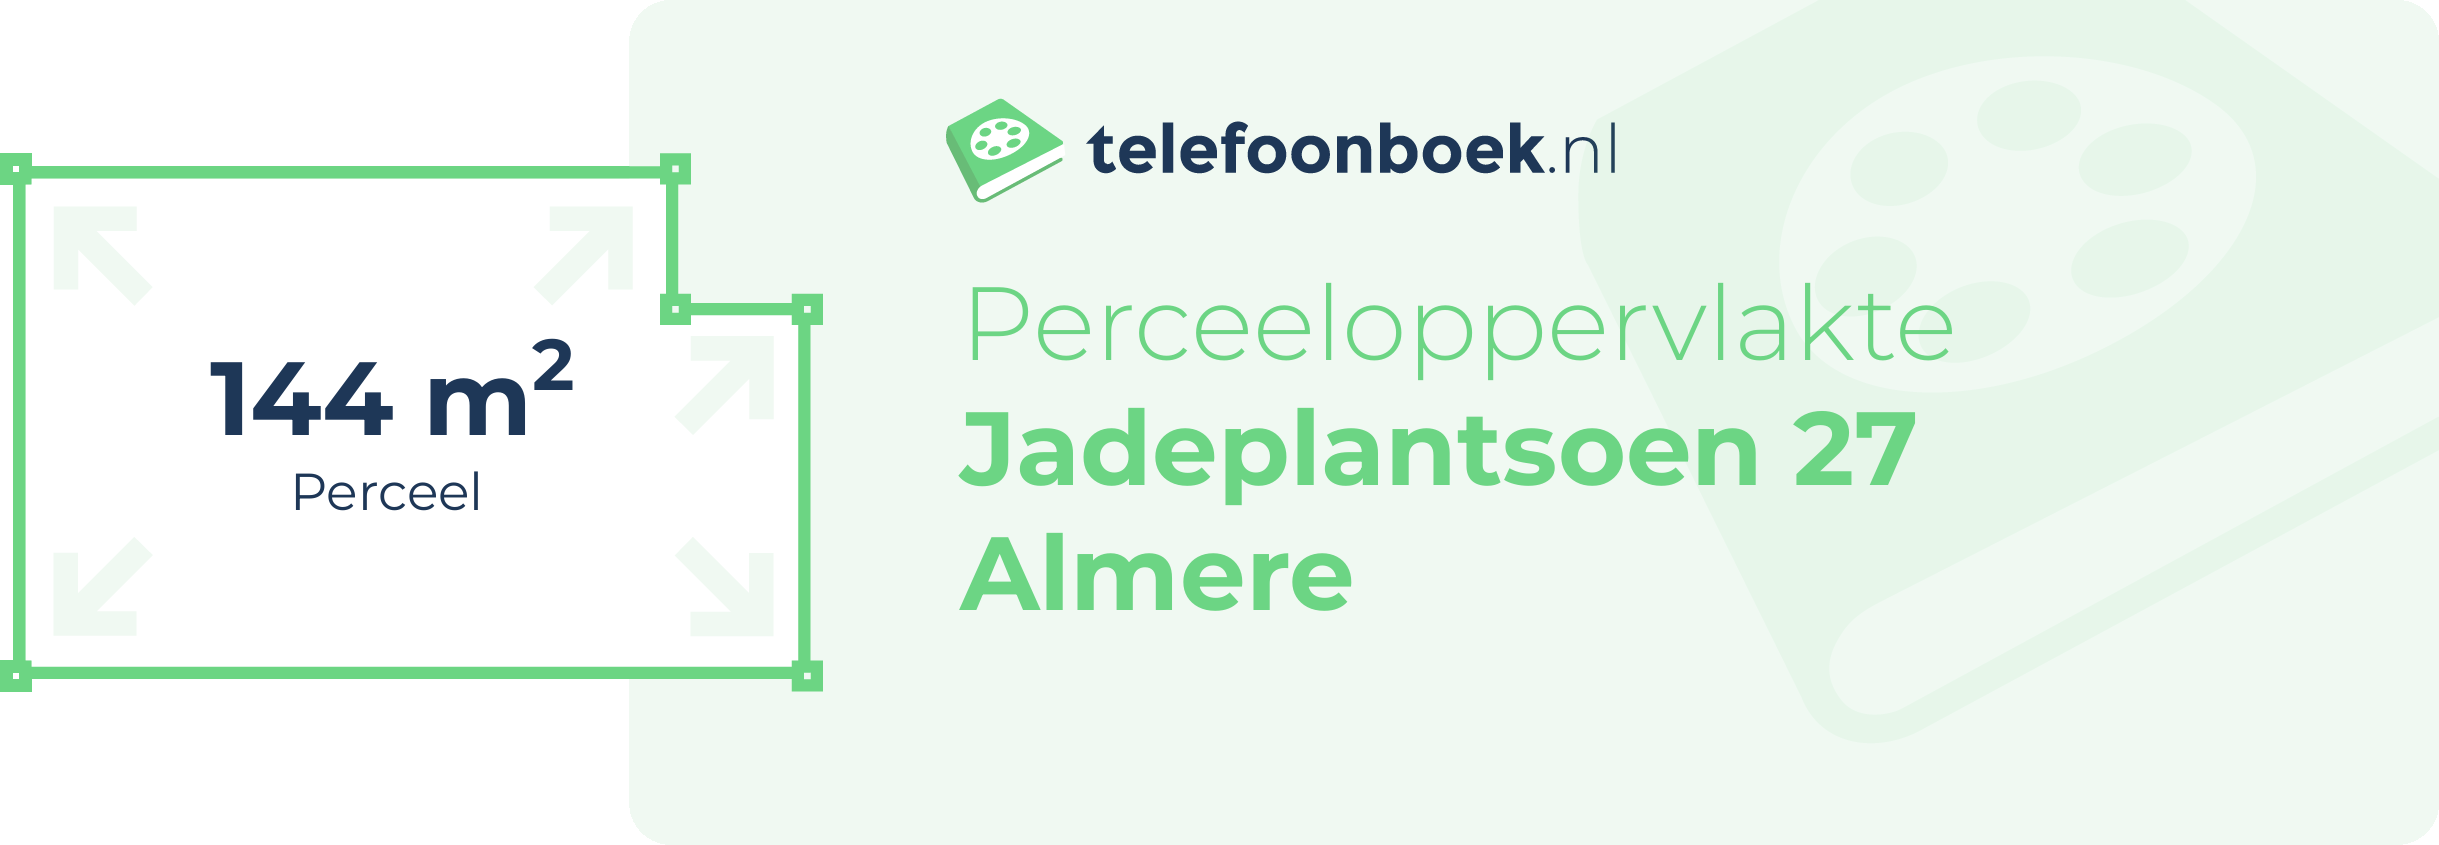 Perceeloppervlakte Jadeplantsoen 27 Almere